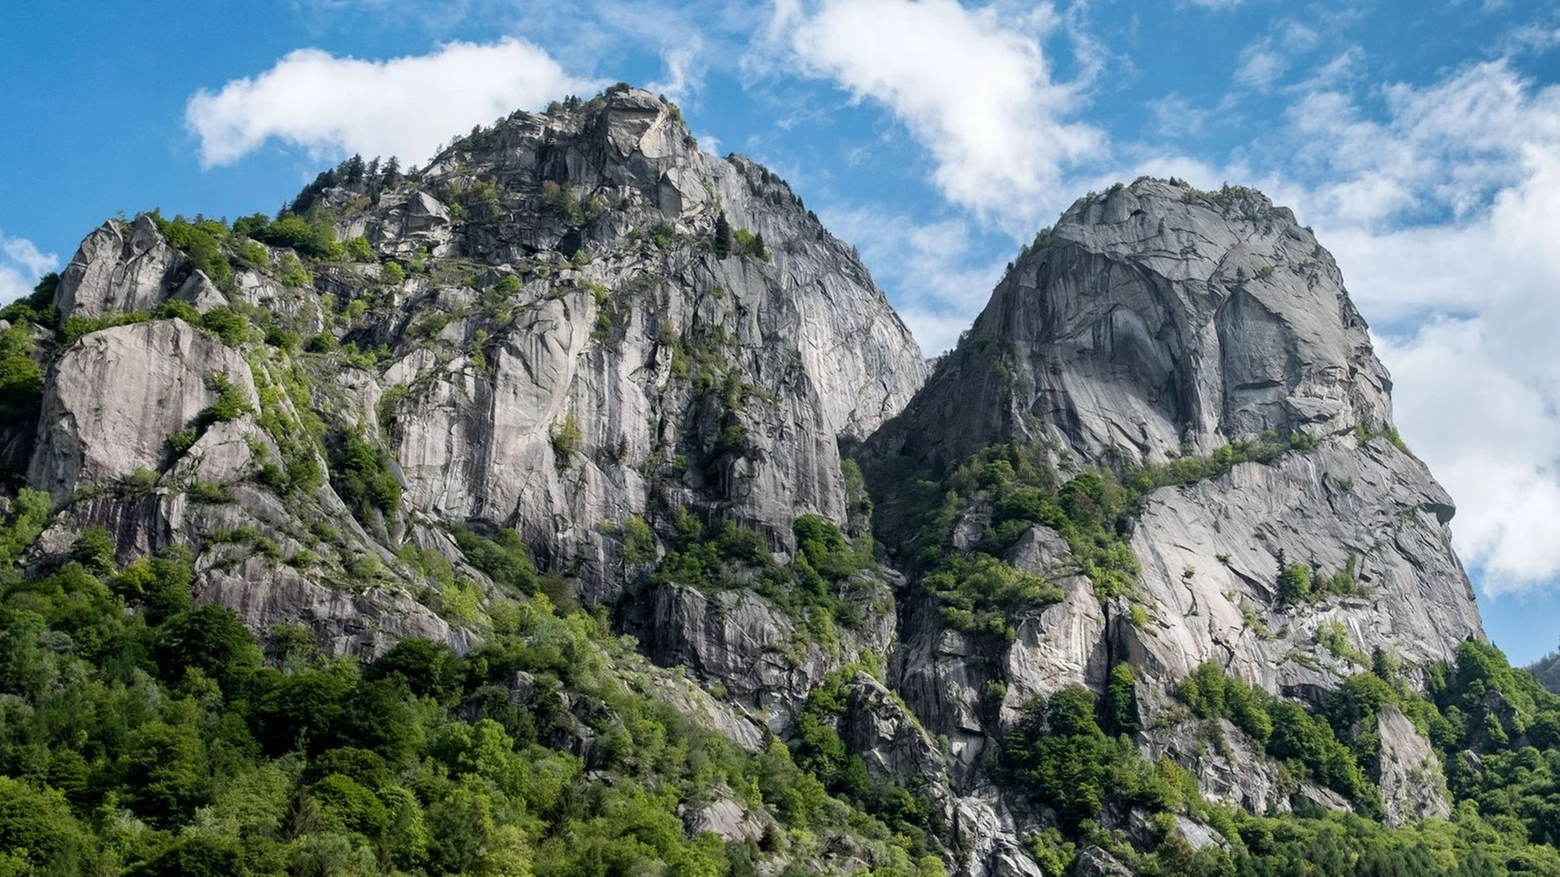 La montagna dove sono morti i tre giovani finanzieri del soccorso alpino è una delle più celebri del paradiso dell’arrampicata. Un viaggio verticale sul granito